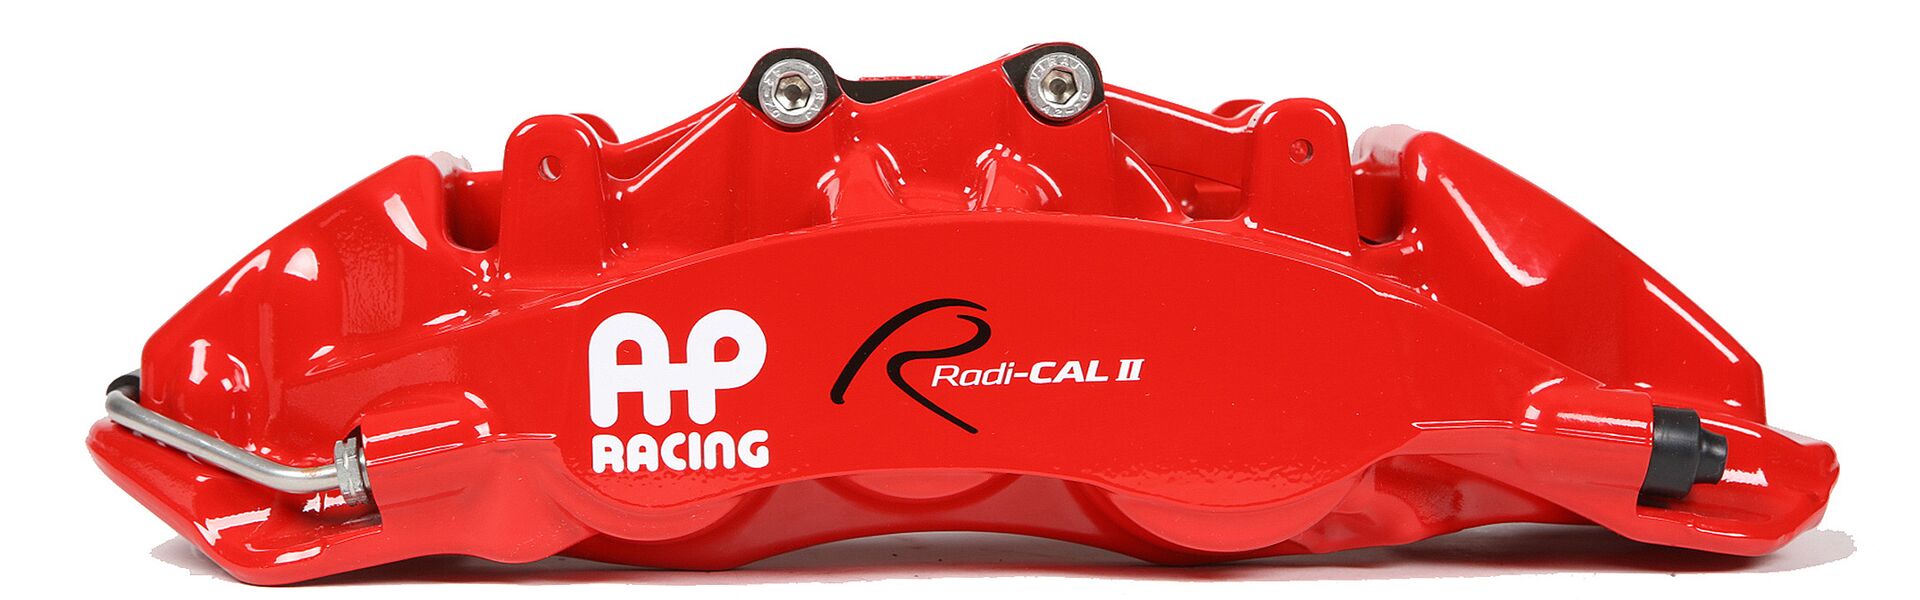 Sada zadní AP Racing pro Tuning/Trackday - kompletní kit